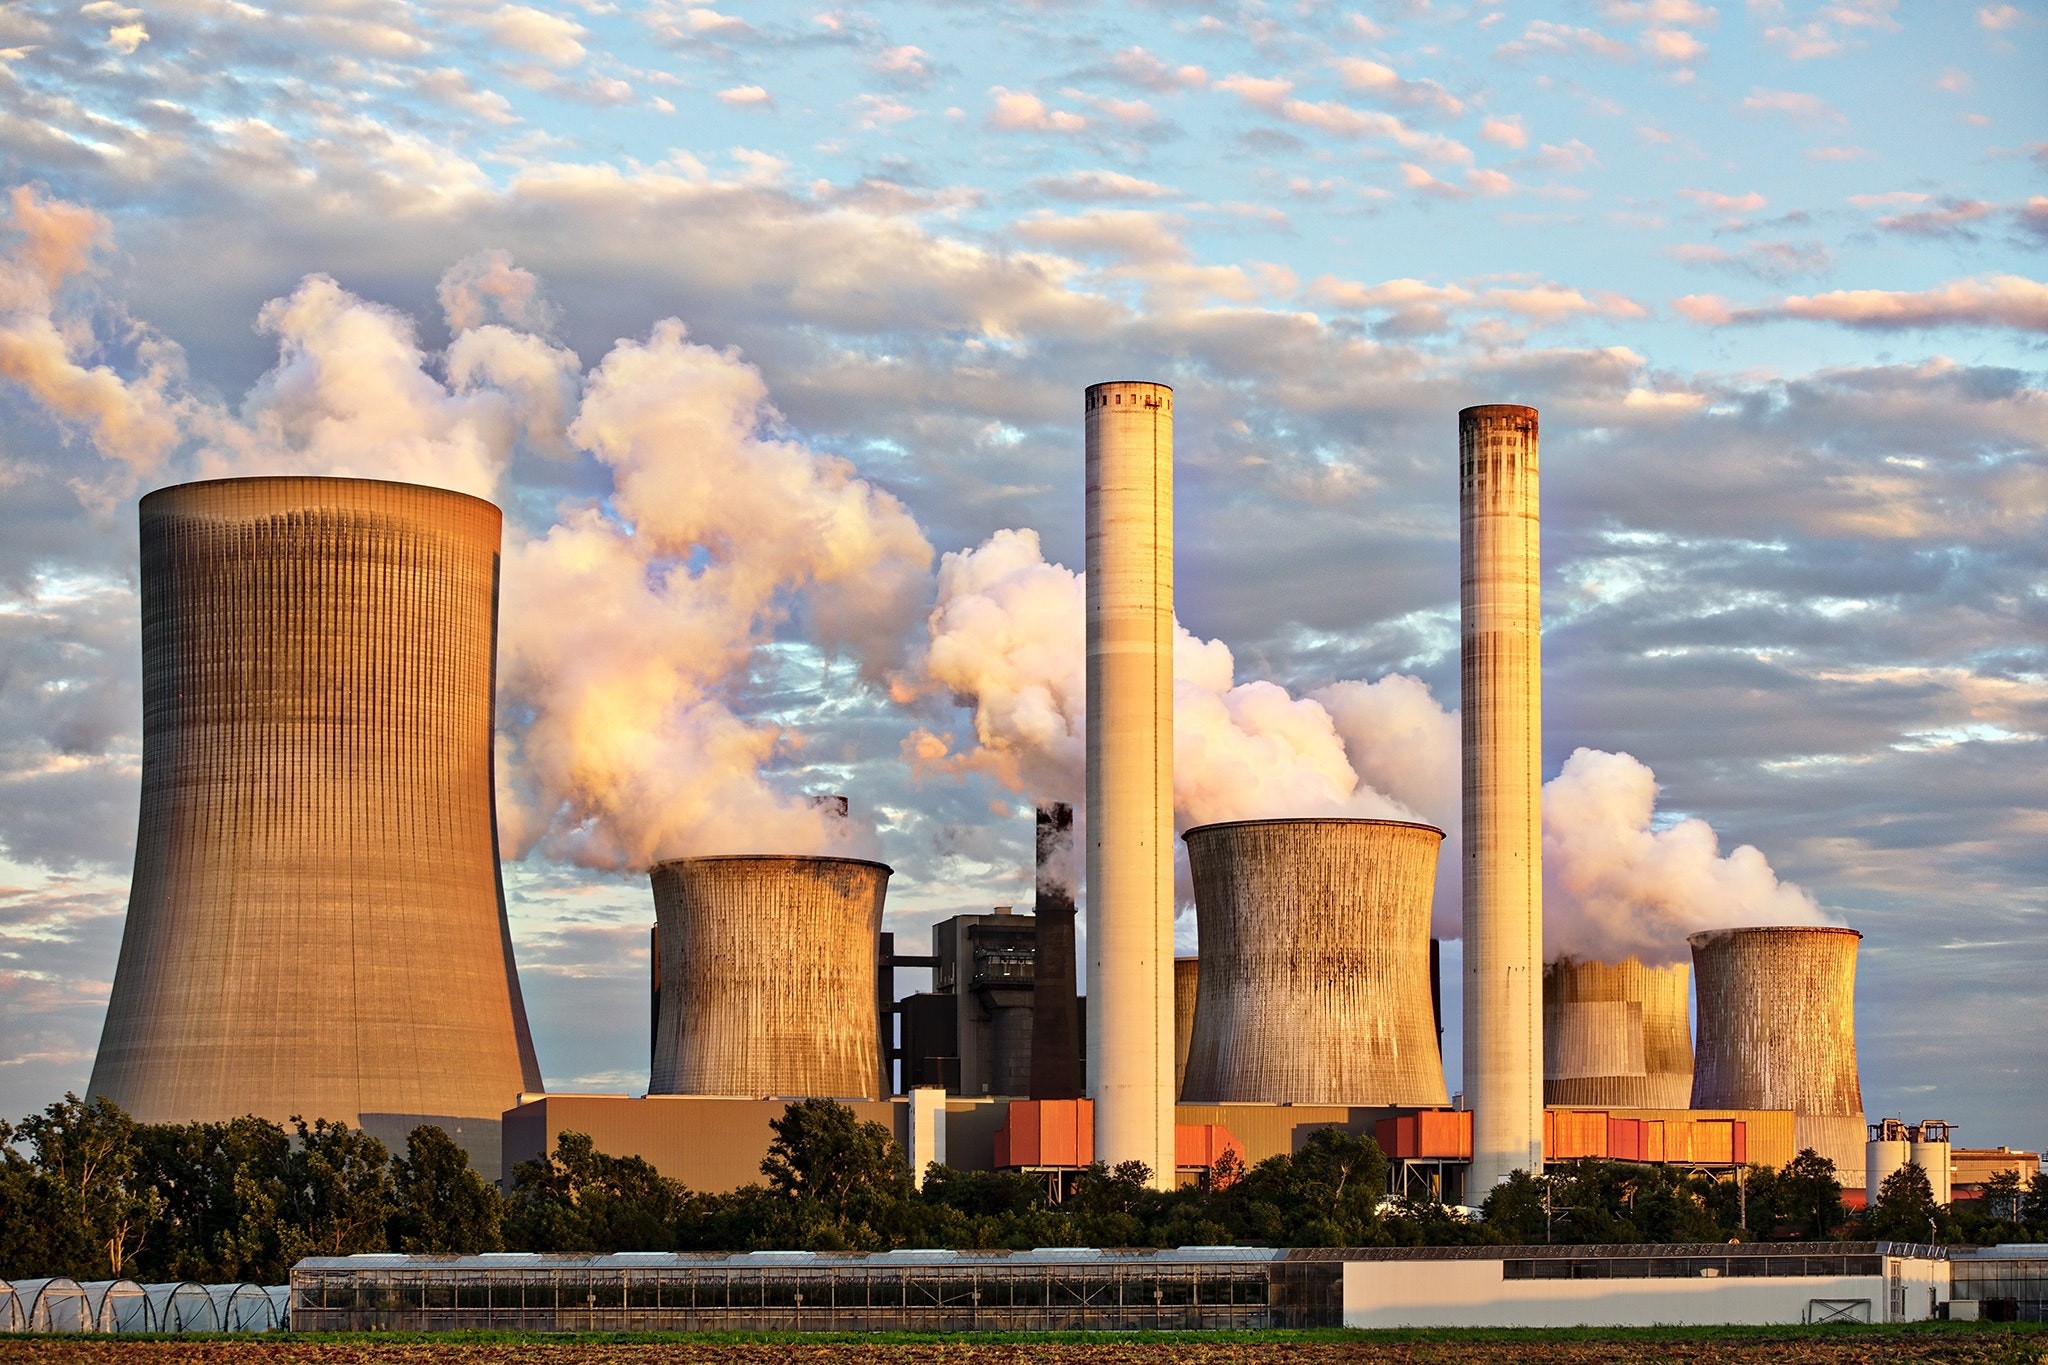 Poluição atmosférica é uma das principais causas de morte prematura ao redro do mundo (Foto: Pixabay)